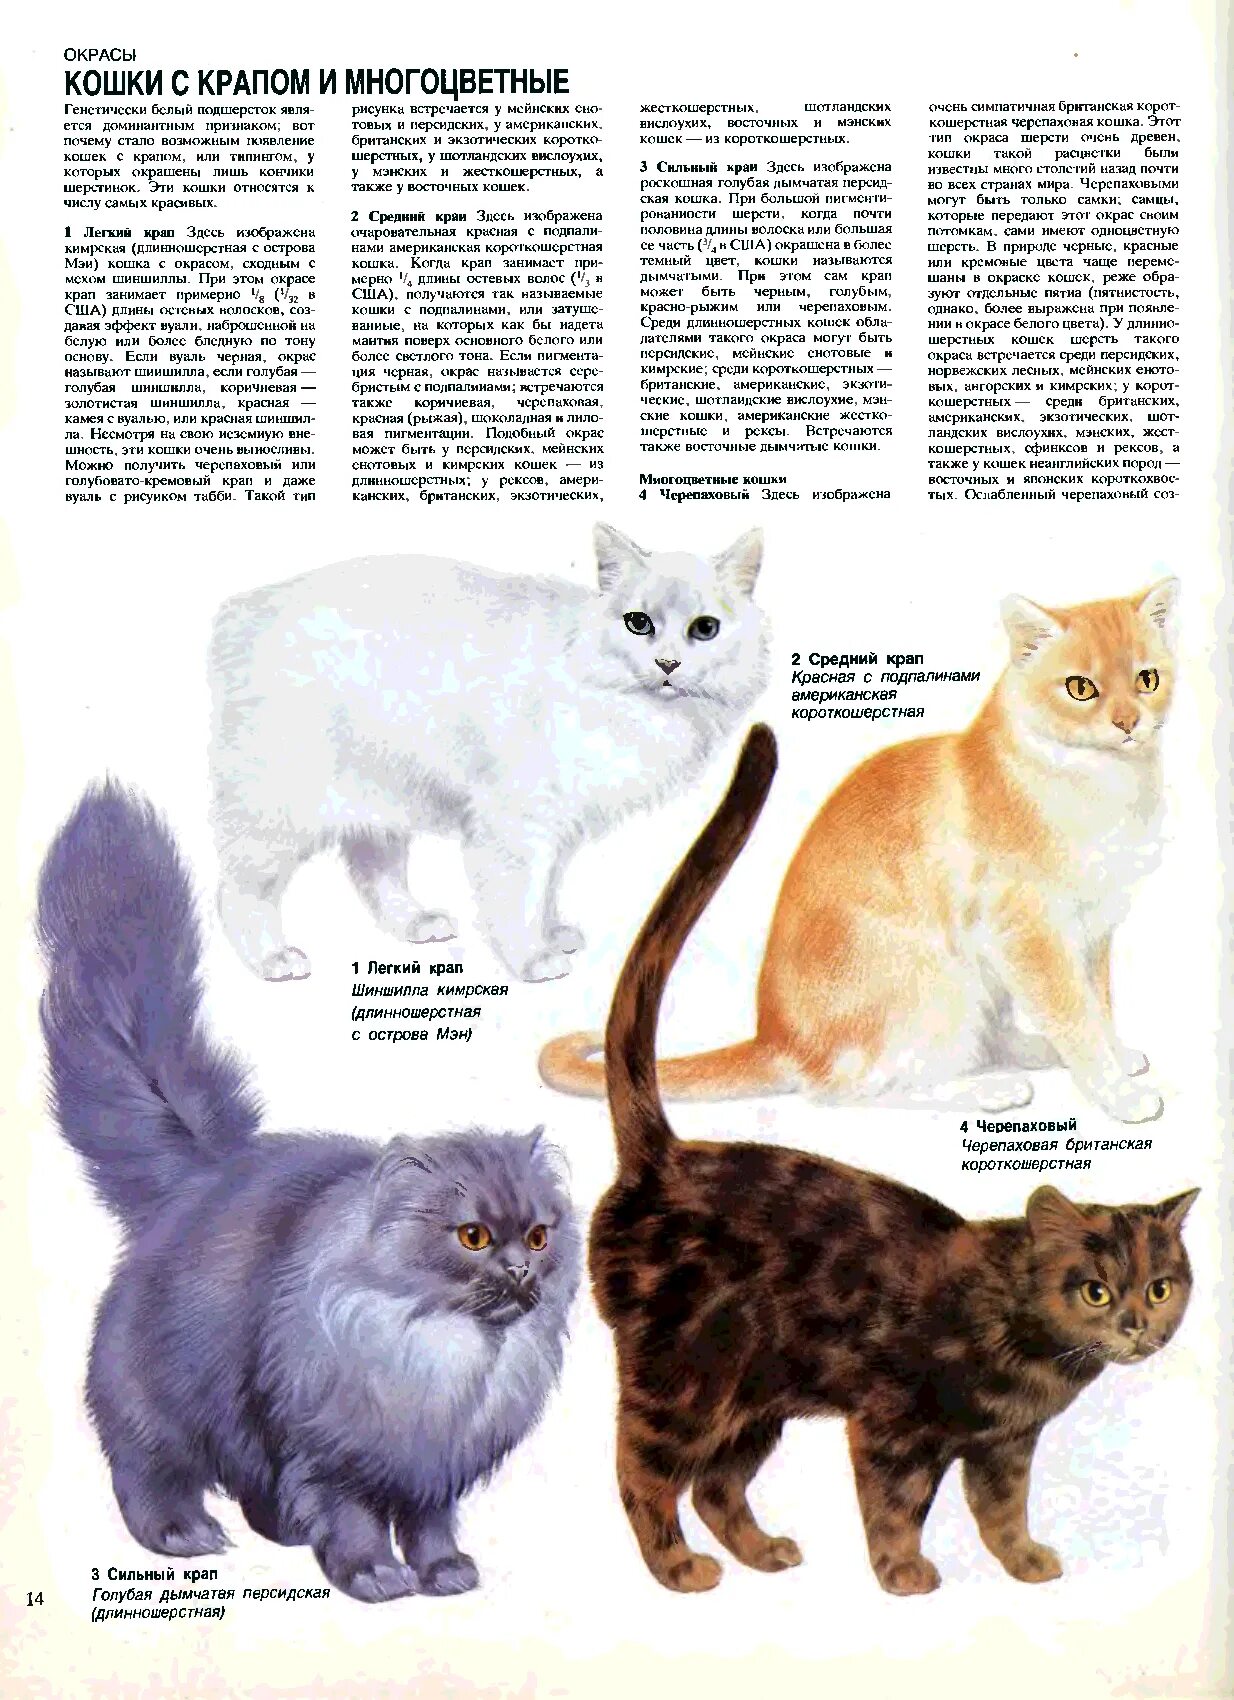 Окрас и тип шерсти кошек. Расцветки кошек. Типы окраски кошек. Порода и окрас кошек. Расцветки шерсти кошек.